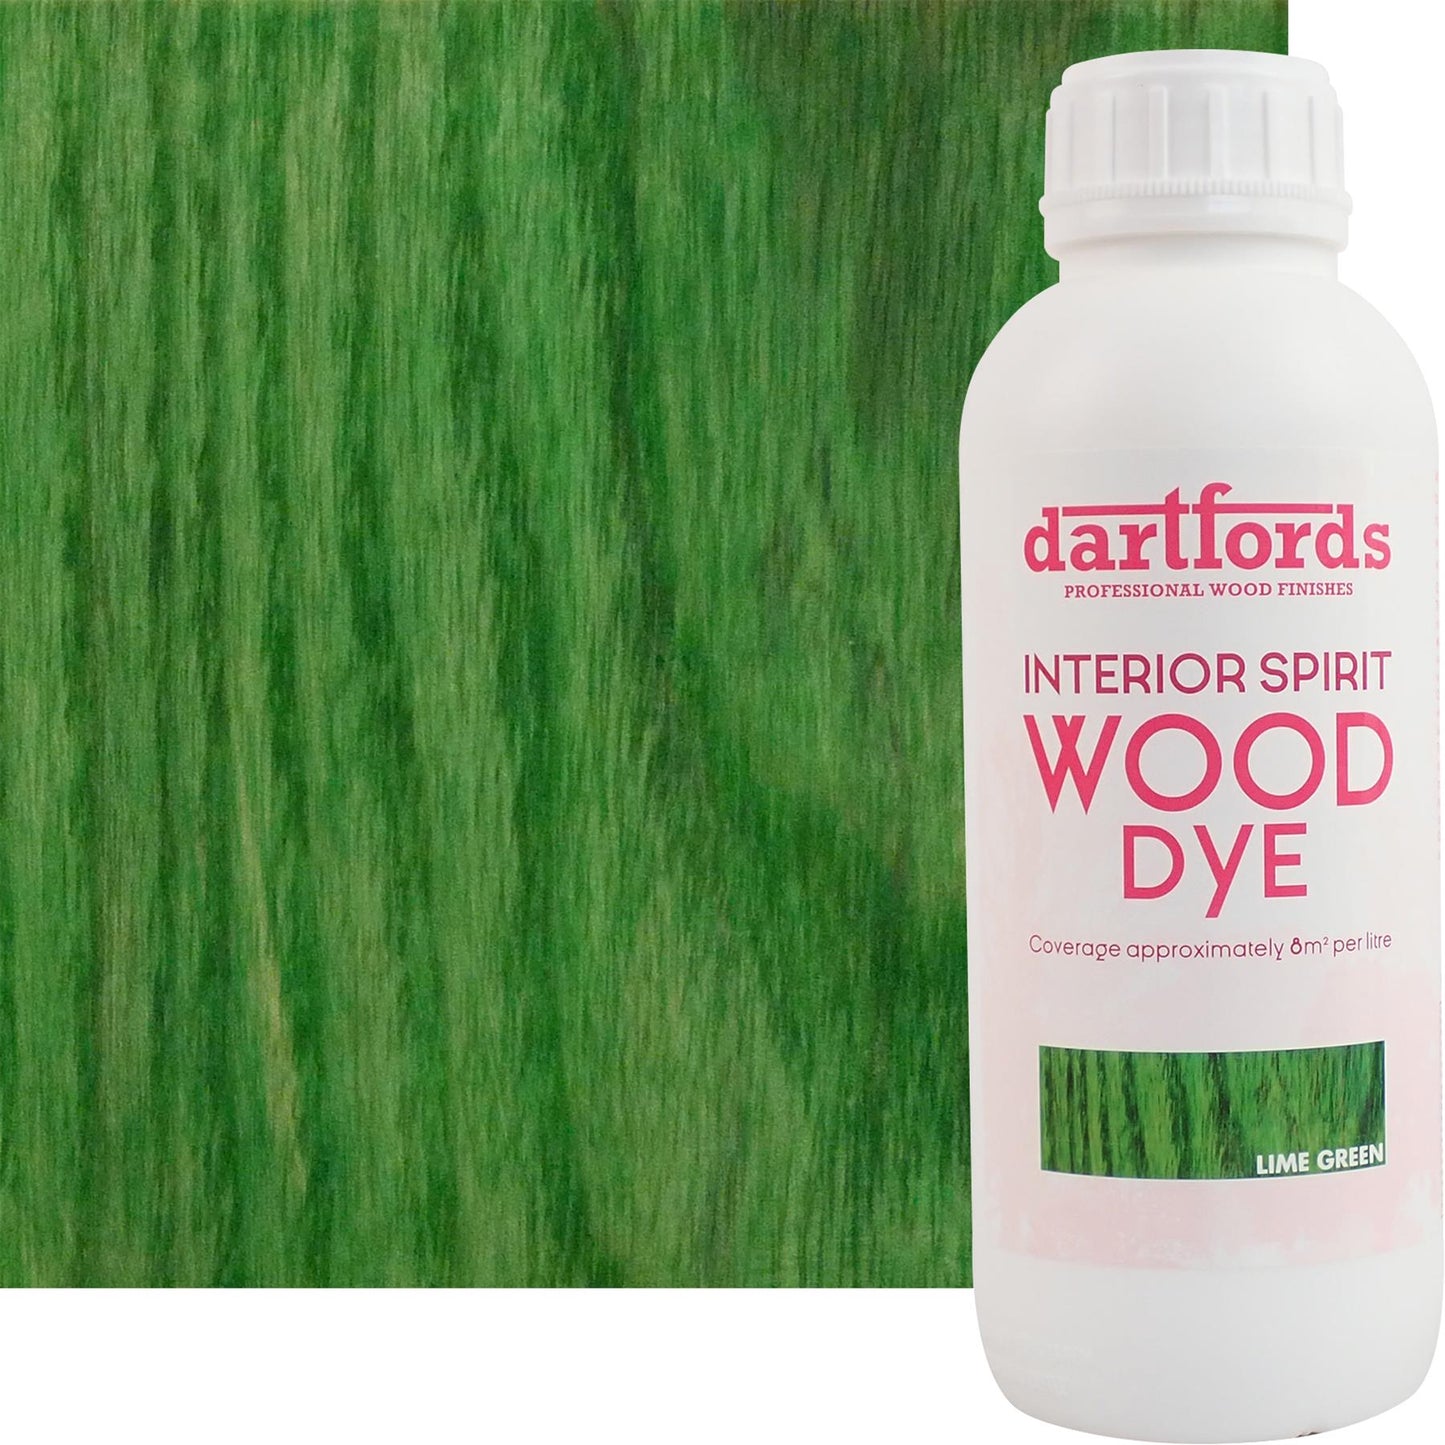 dartfords Lime Green Interior Spirit Based Wood Dye - 1 litre Tin